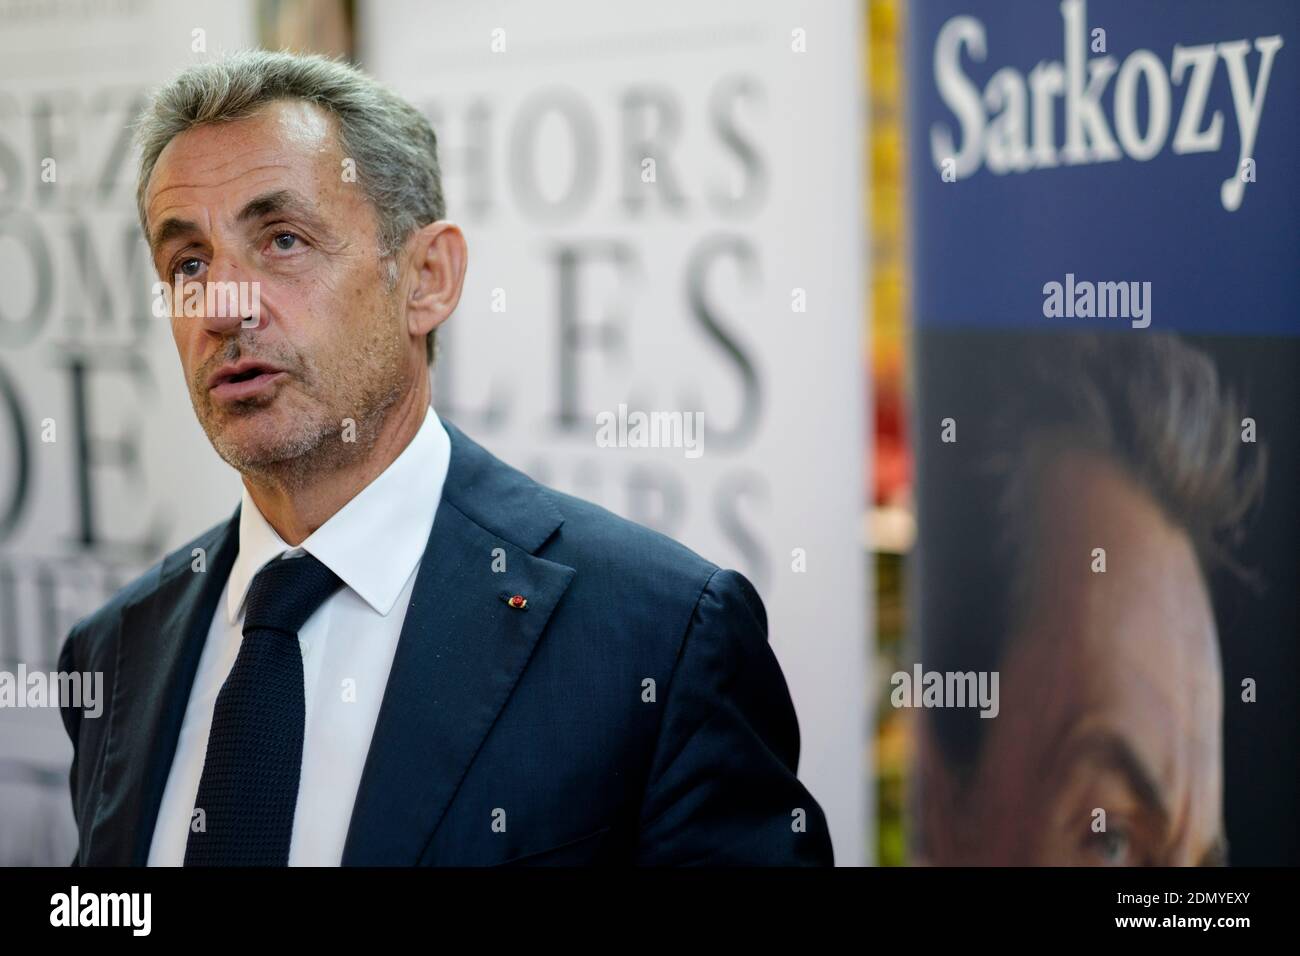 Bruxelles, Belgio, il 3 settembre 2020: Nicolas Sarkozy firma copie del suo libro "le temps des tempetes" (il tempo della tempesta) Foto Stock